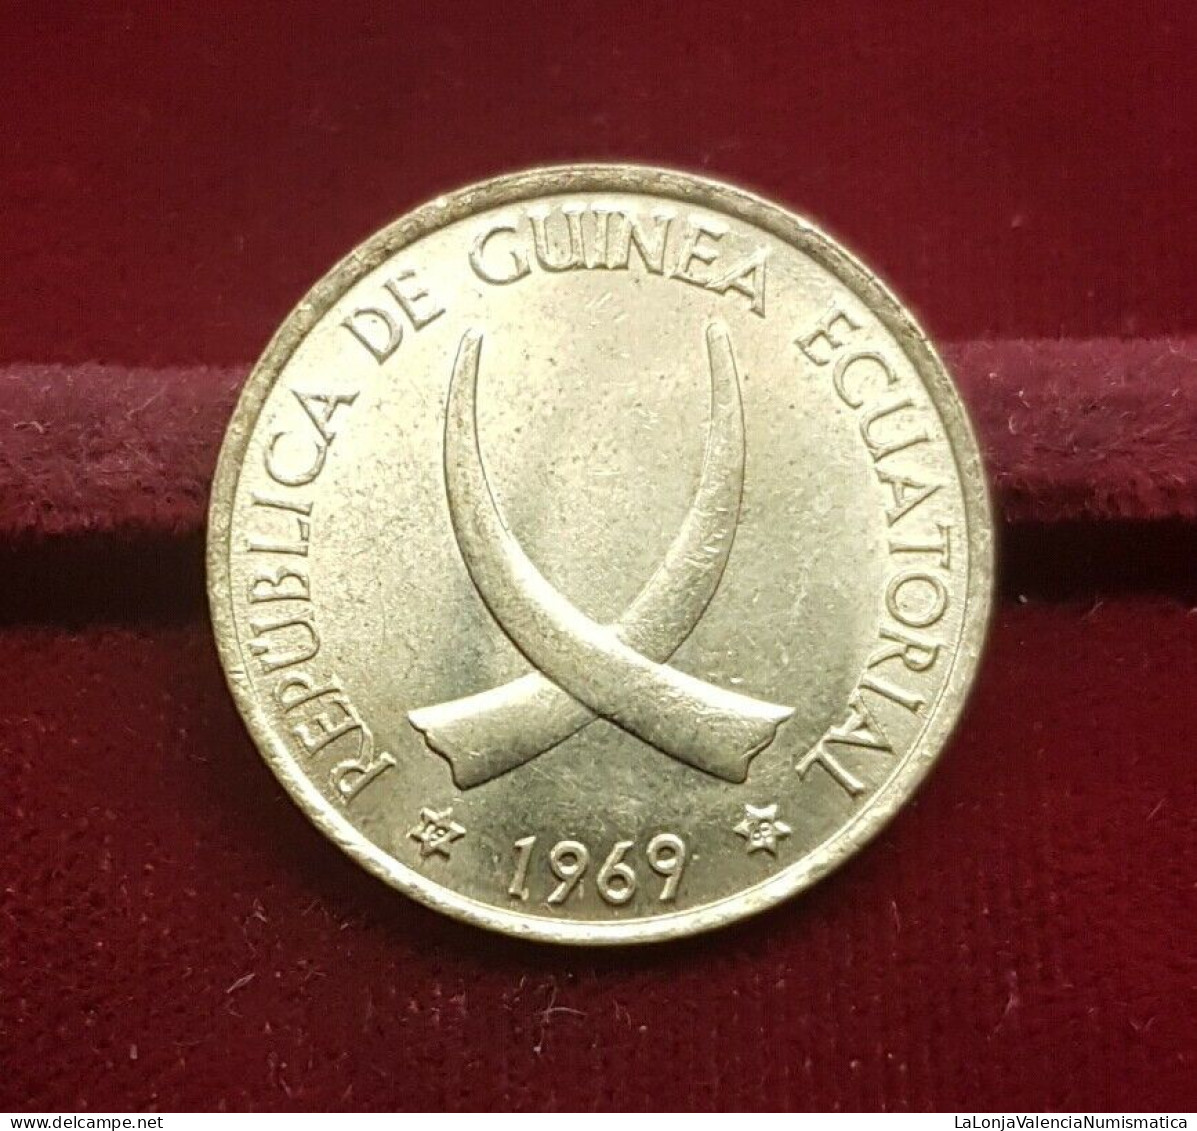 Guinea Ecuatorial Equatorial 1 Peseta Guineana 1969 *69 Km 1 Sc Unc - Equatorial Guinea